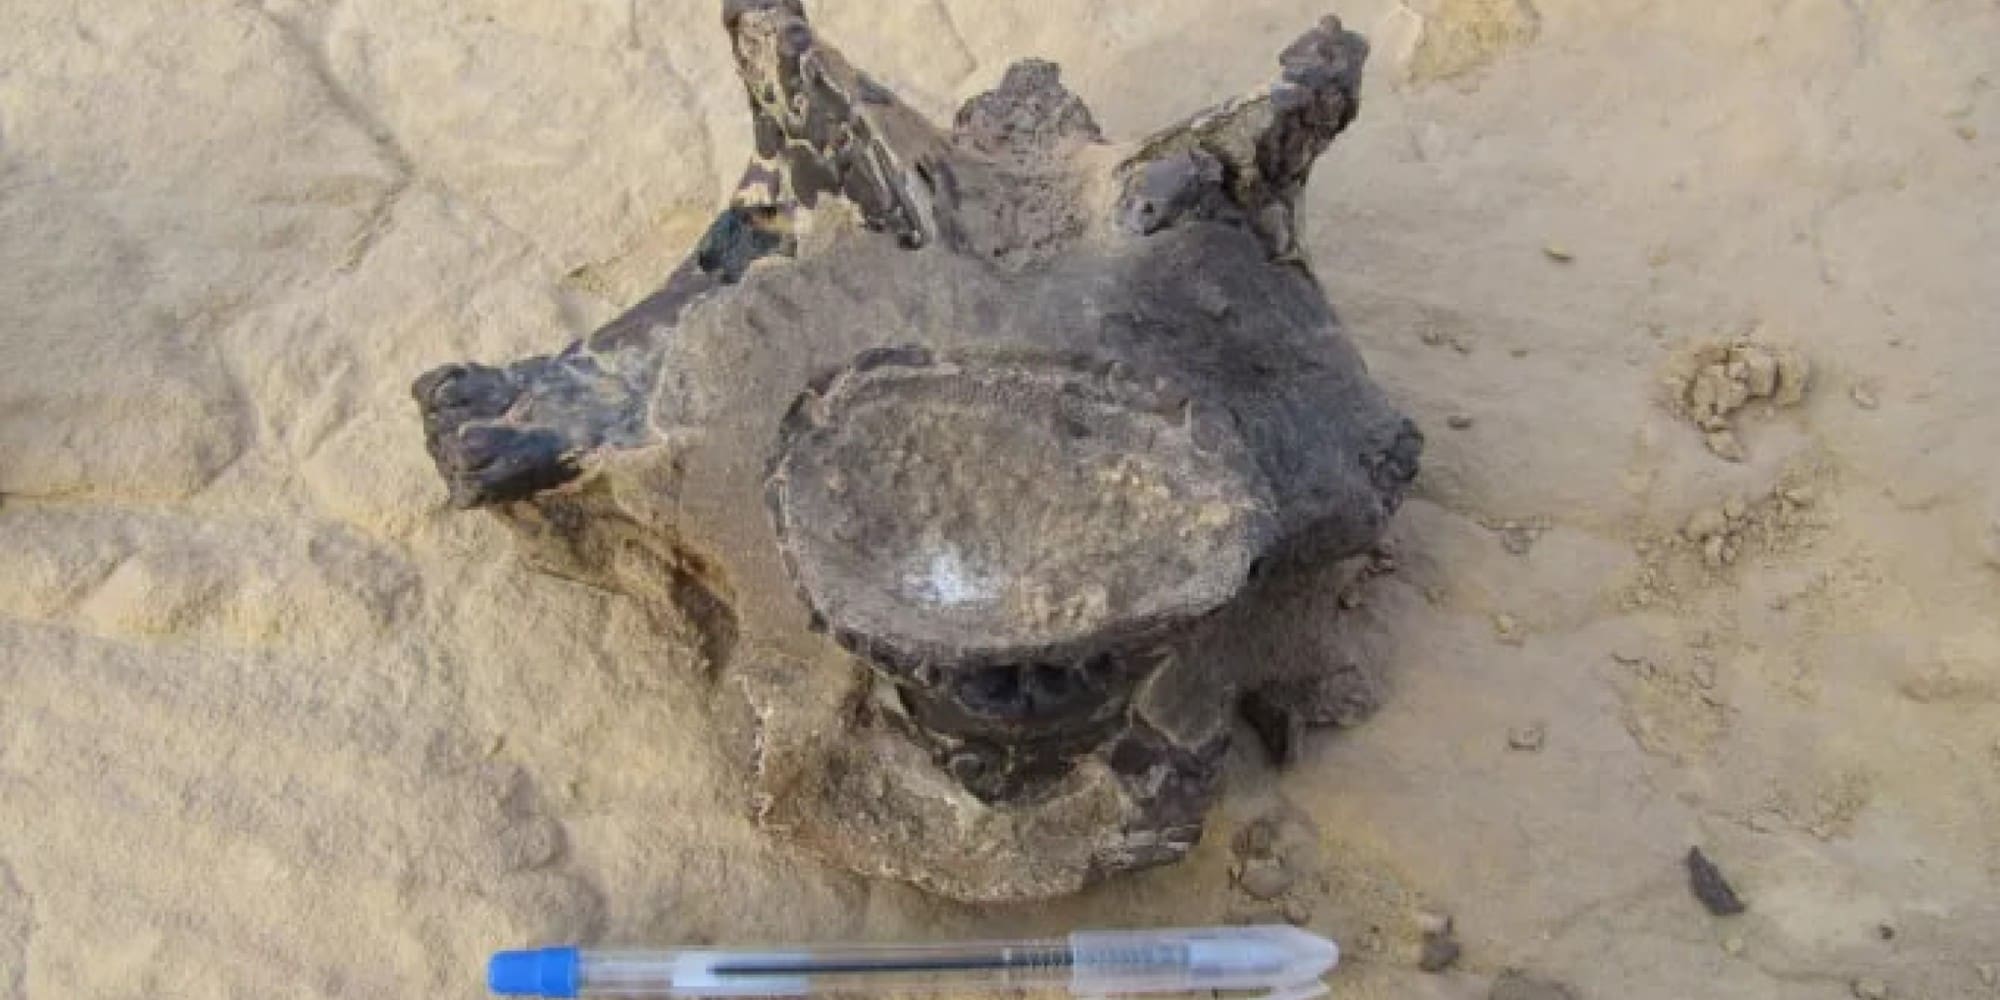 Σπόνδυλος δεινοσαύρου ηλικίας 98 εκατ. ετών ανακαλύφθηκε στην έρημο στην Αίγυπτο